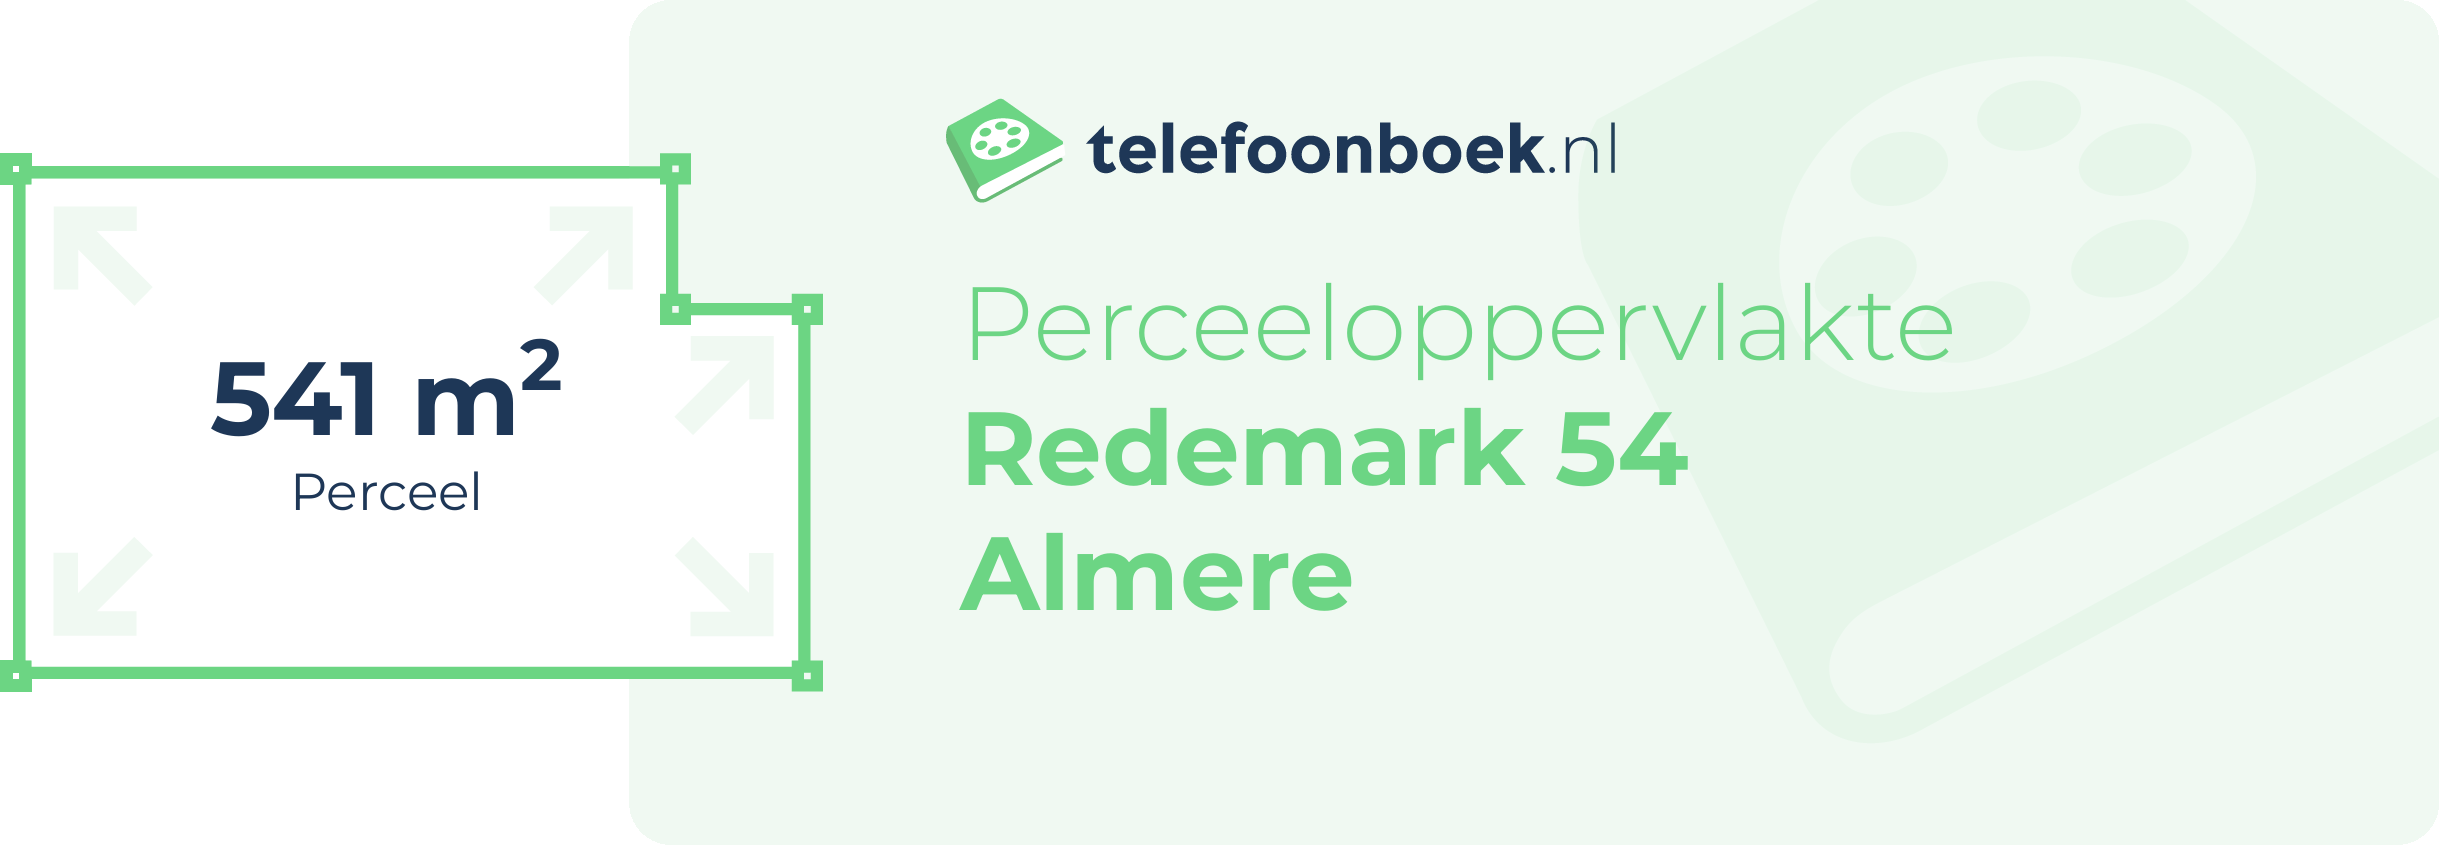 Perceeloppervlakte Redemark 54 Almere